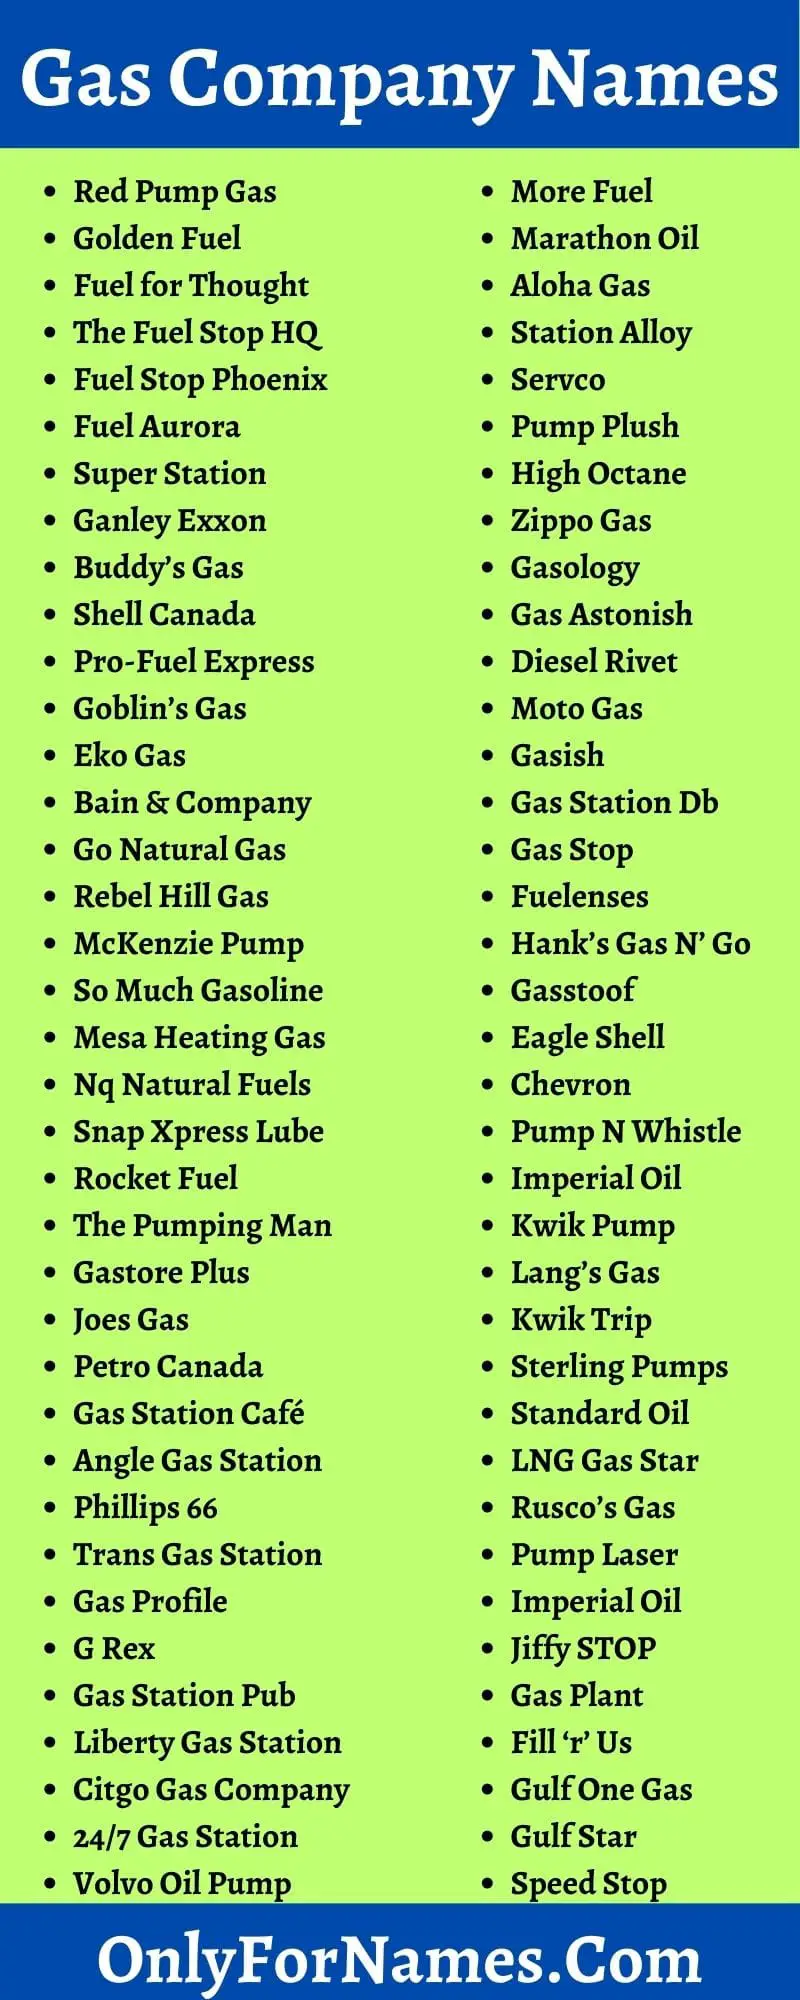 Gas Company Names